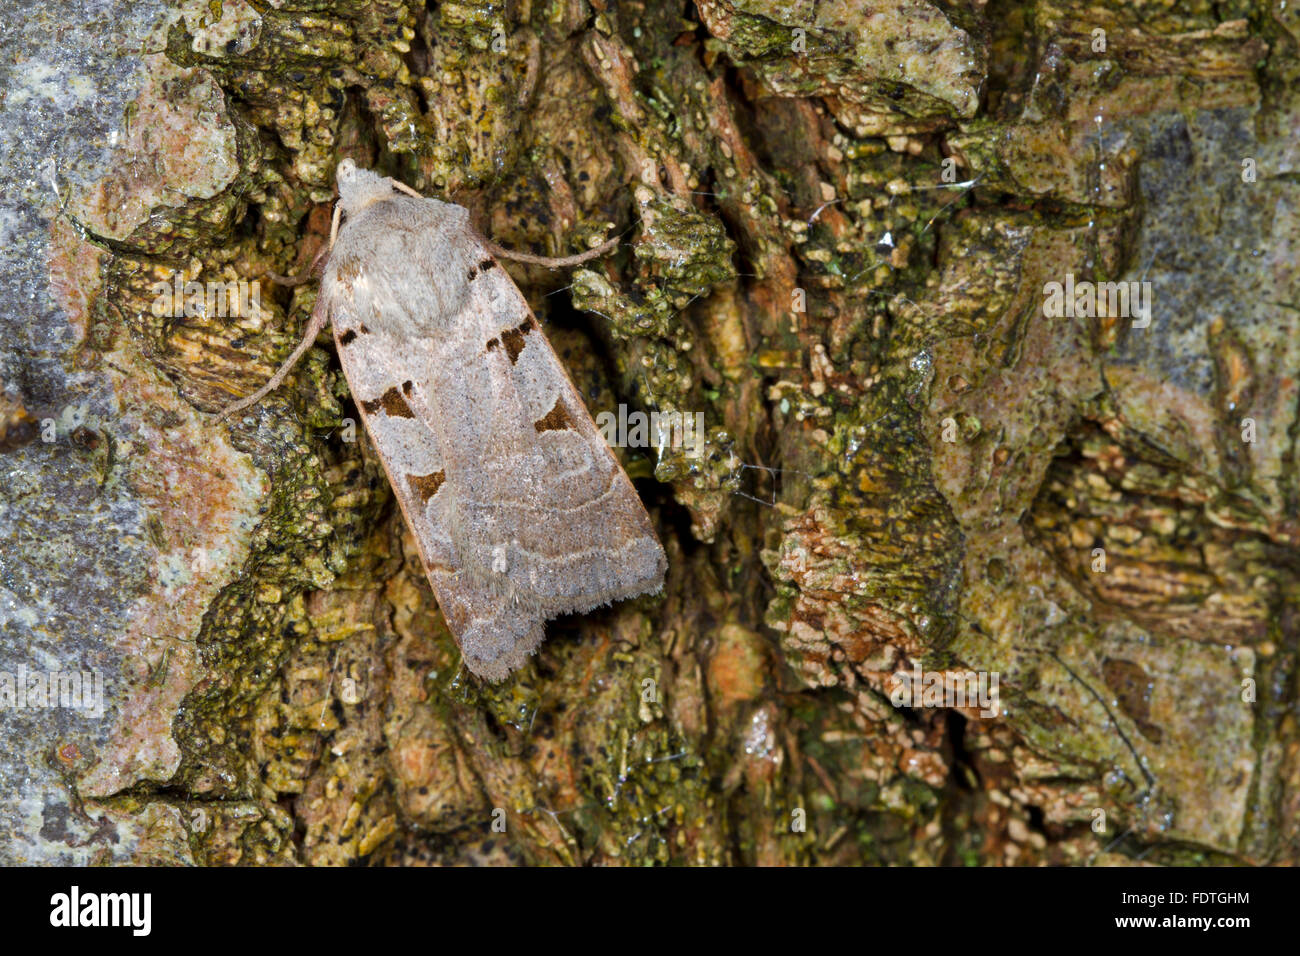 Rustico autunnale (Eugnorisma glareosa) falena adulta in appoggio sulla corteccia di albero. Powys, Galles. Settembre. Foto Stock